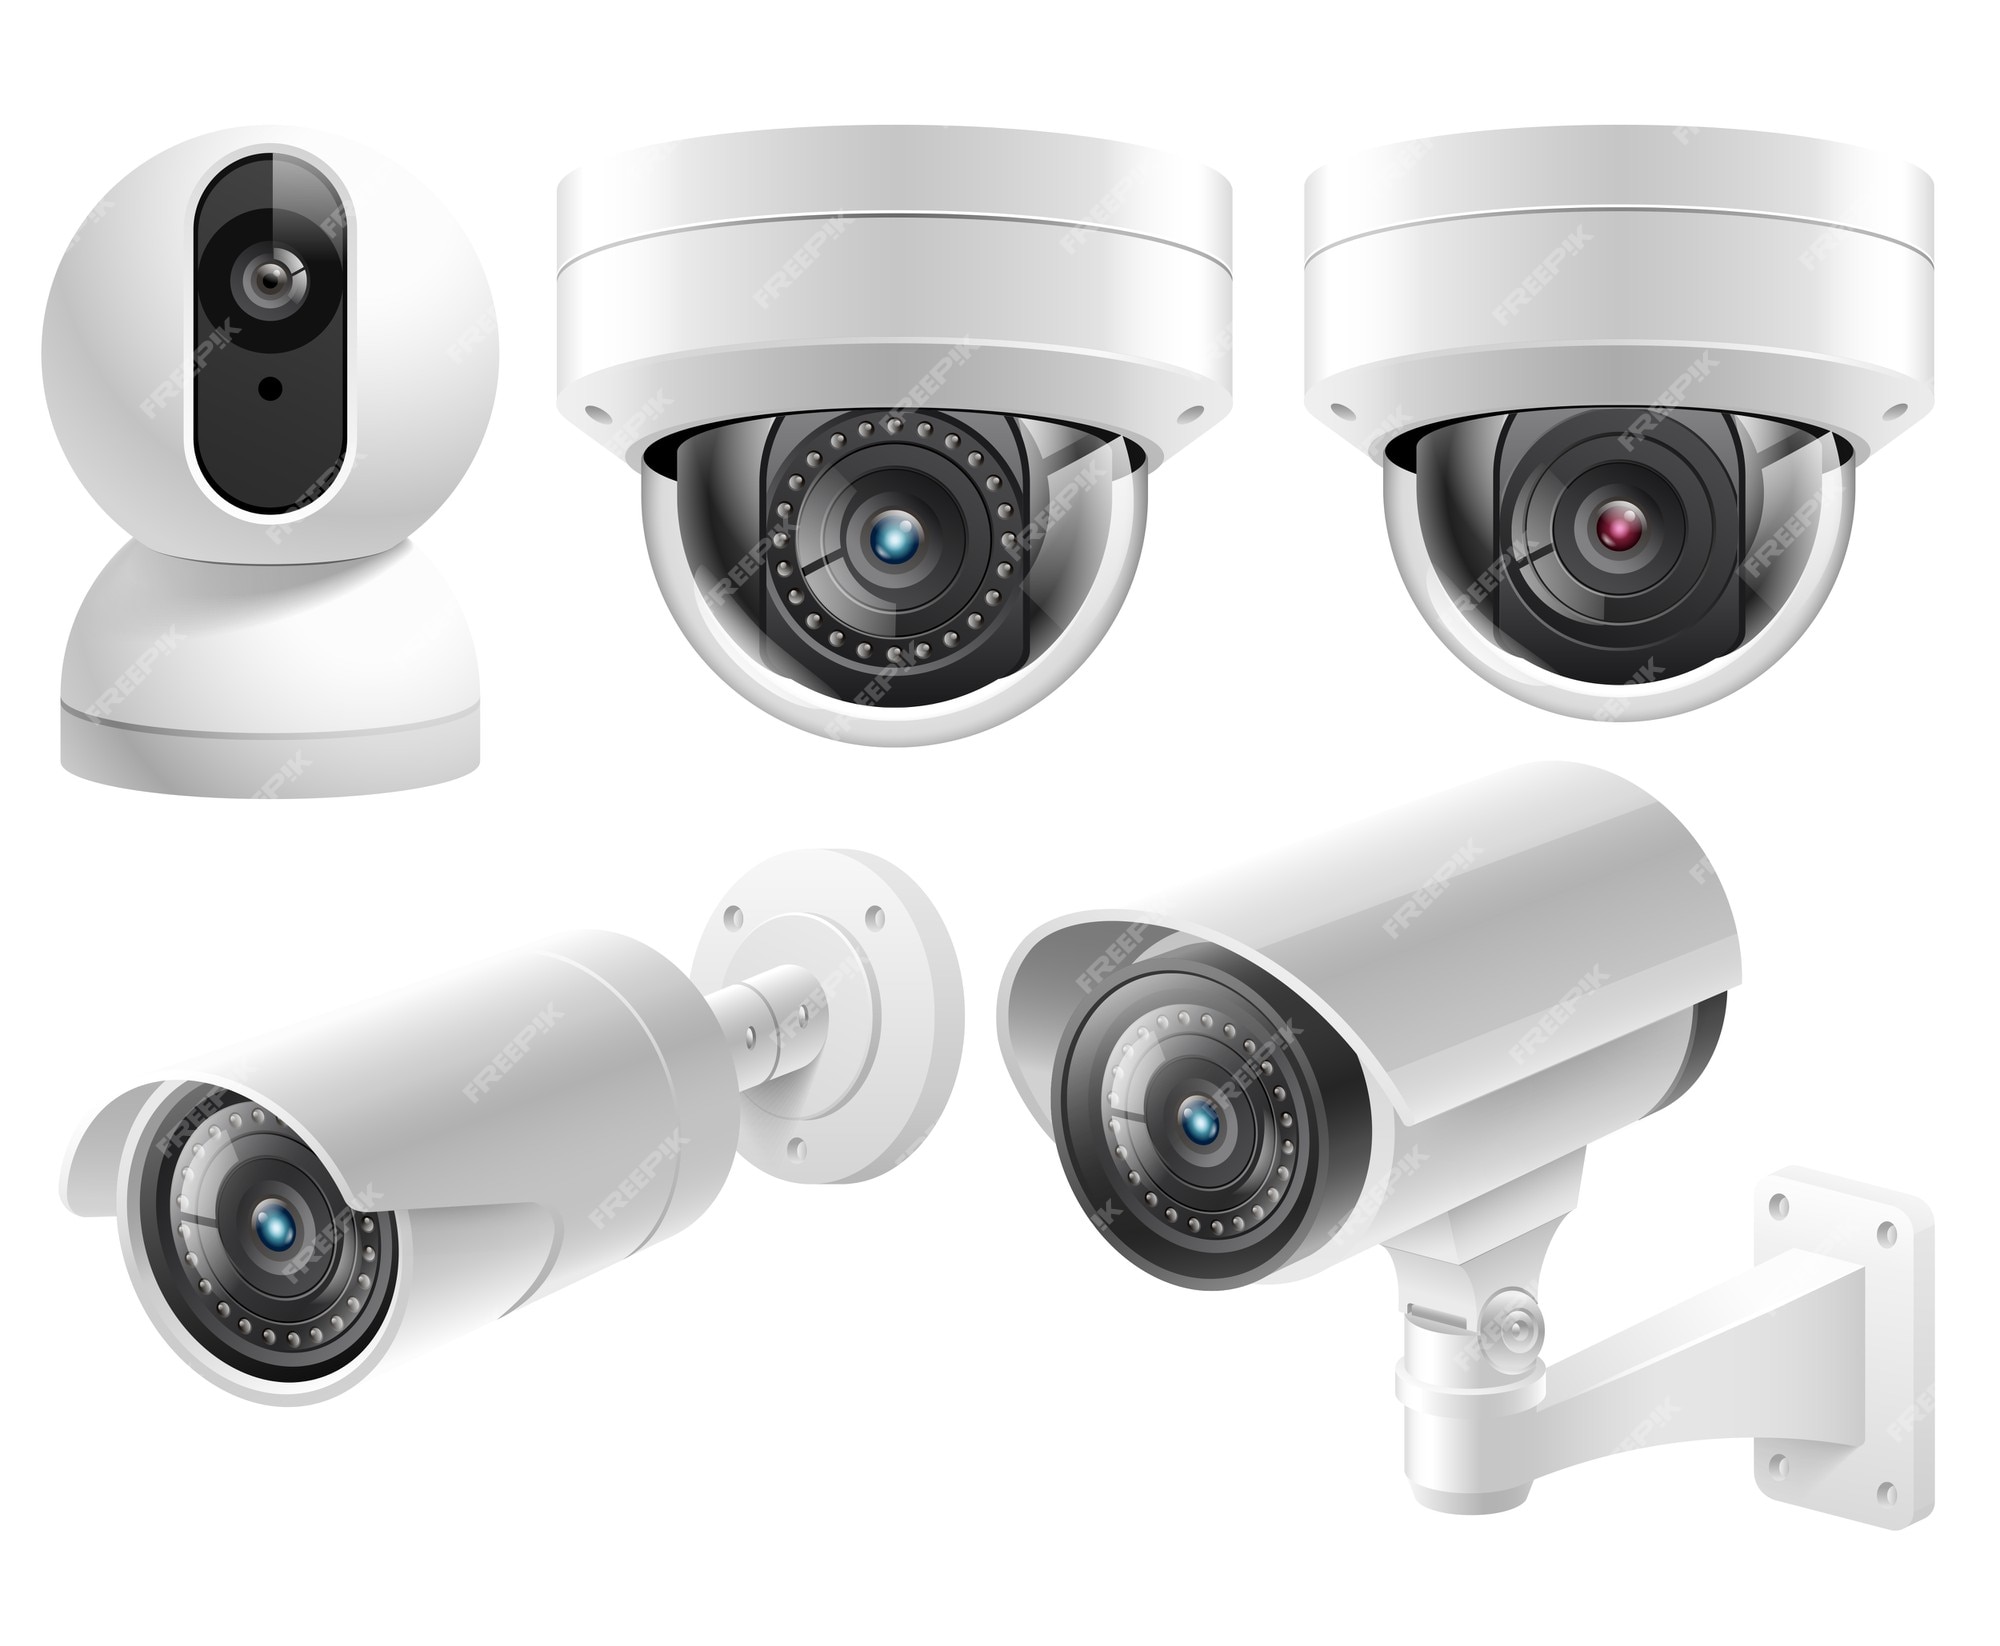 Cámaras de seguridad para el hogar, sistemas videovigilancia, ilustración aislada | Vector Premium